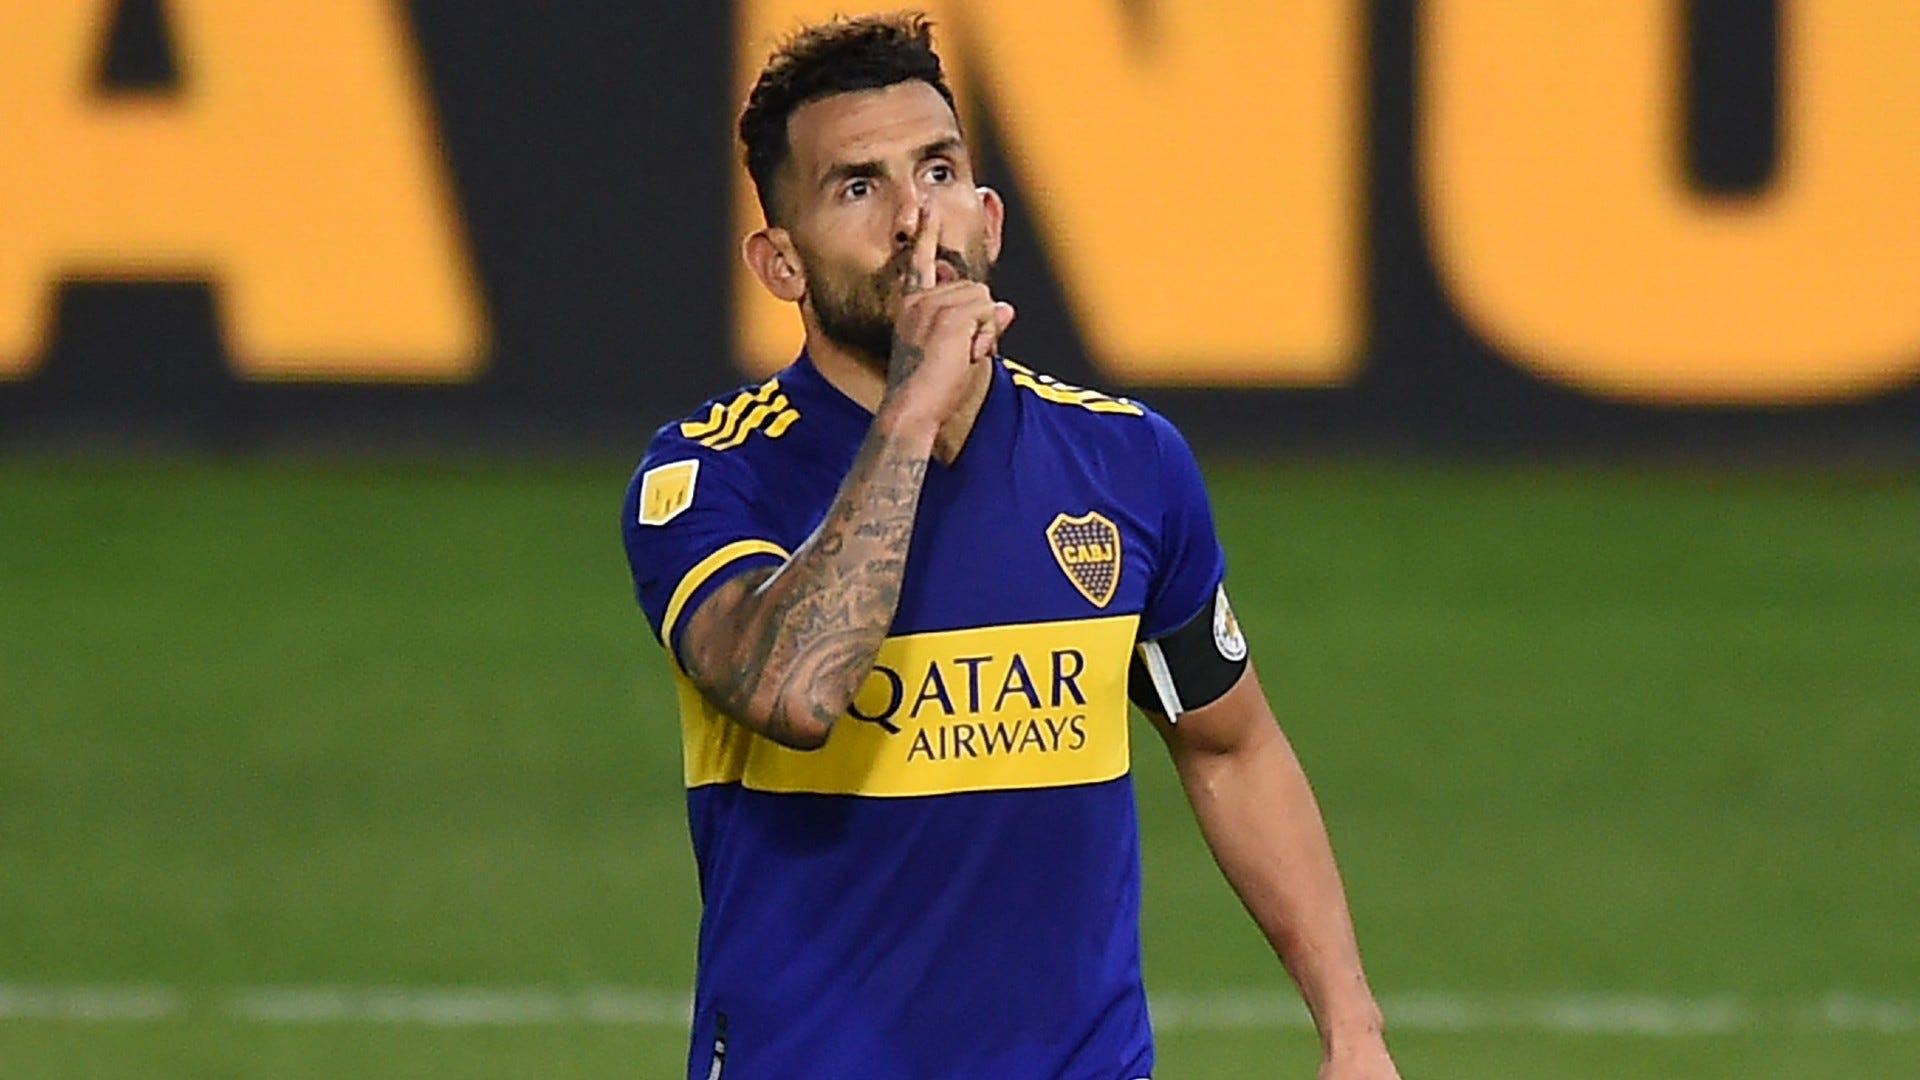 callejón Trastorno deberes Por qué Tevez se va de Boca? La carta del Apache para anunciar su salida |  Goal.com Espana